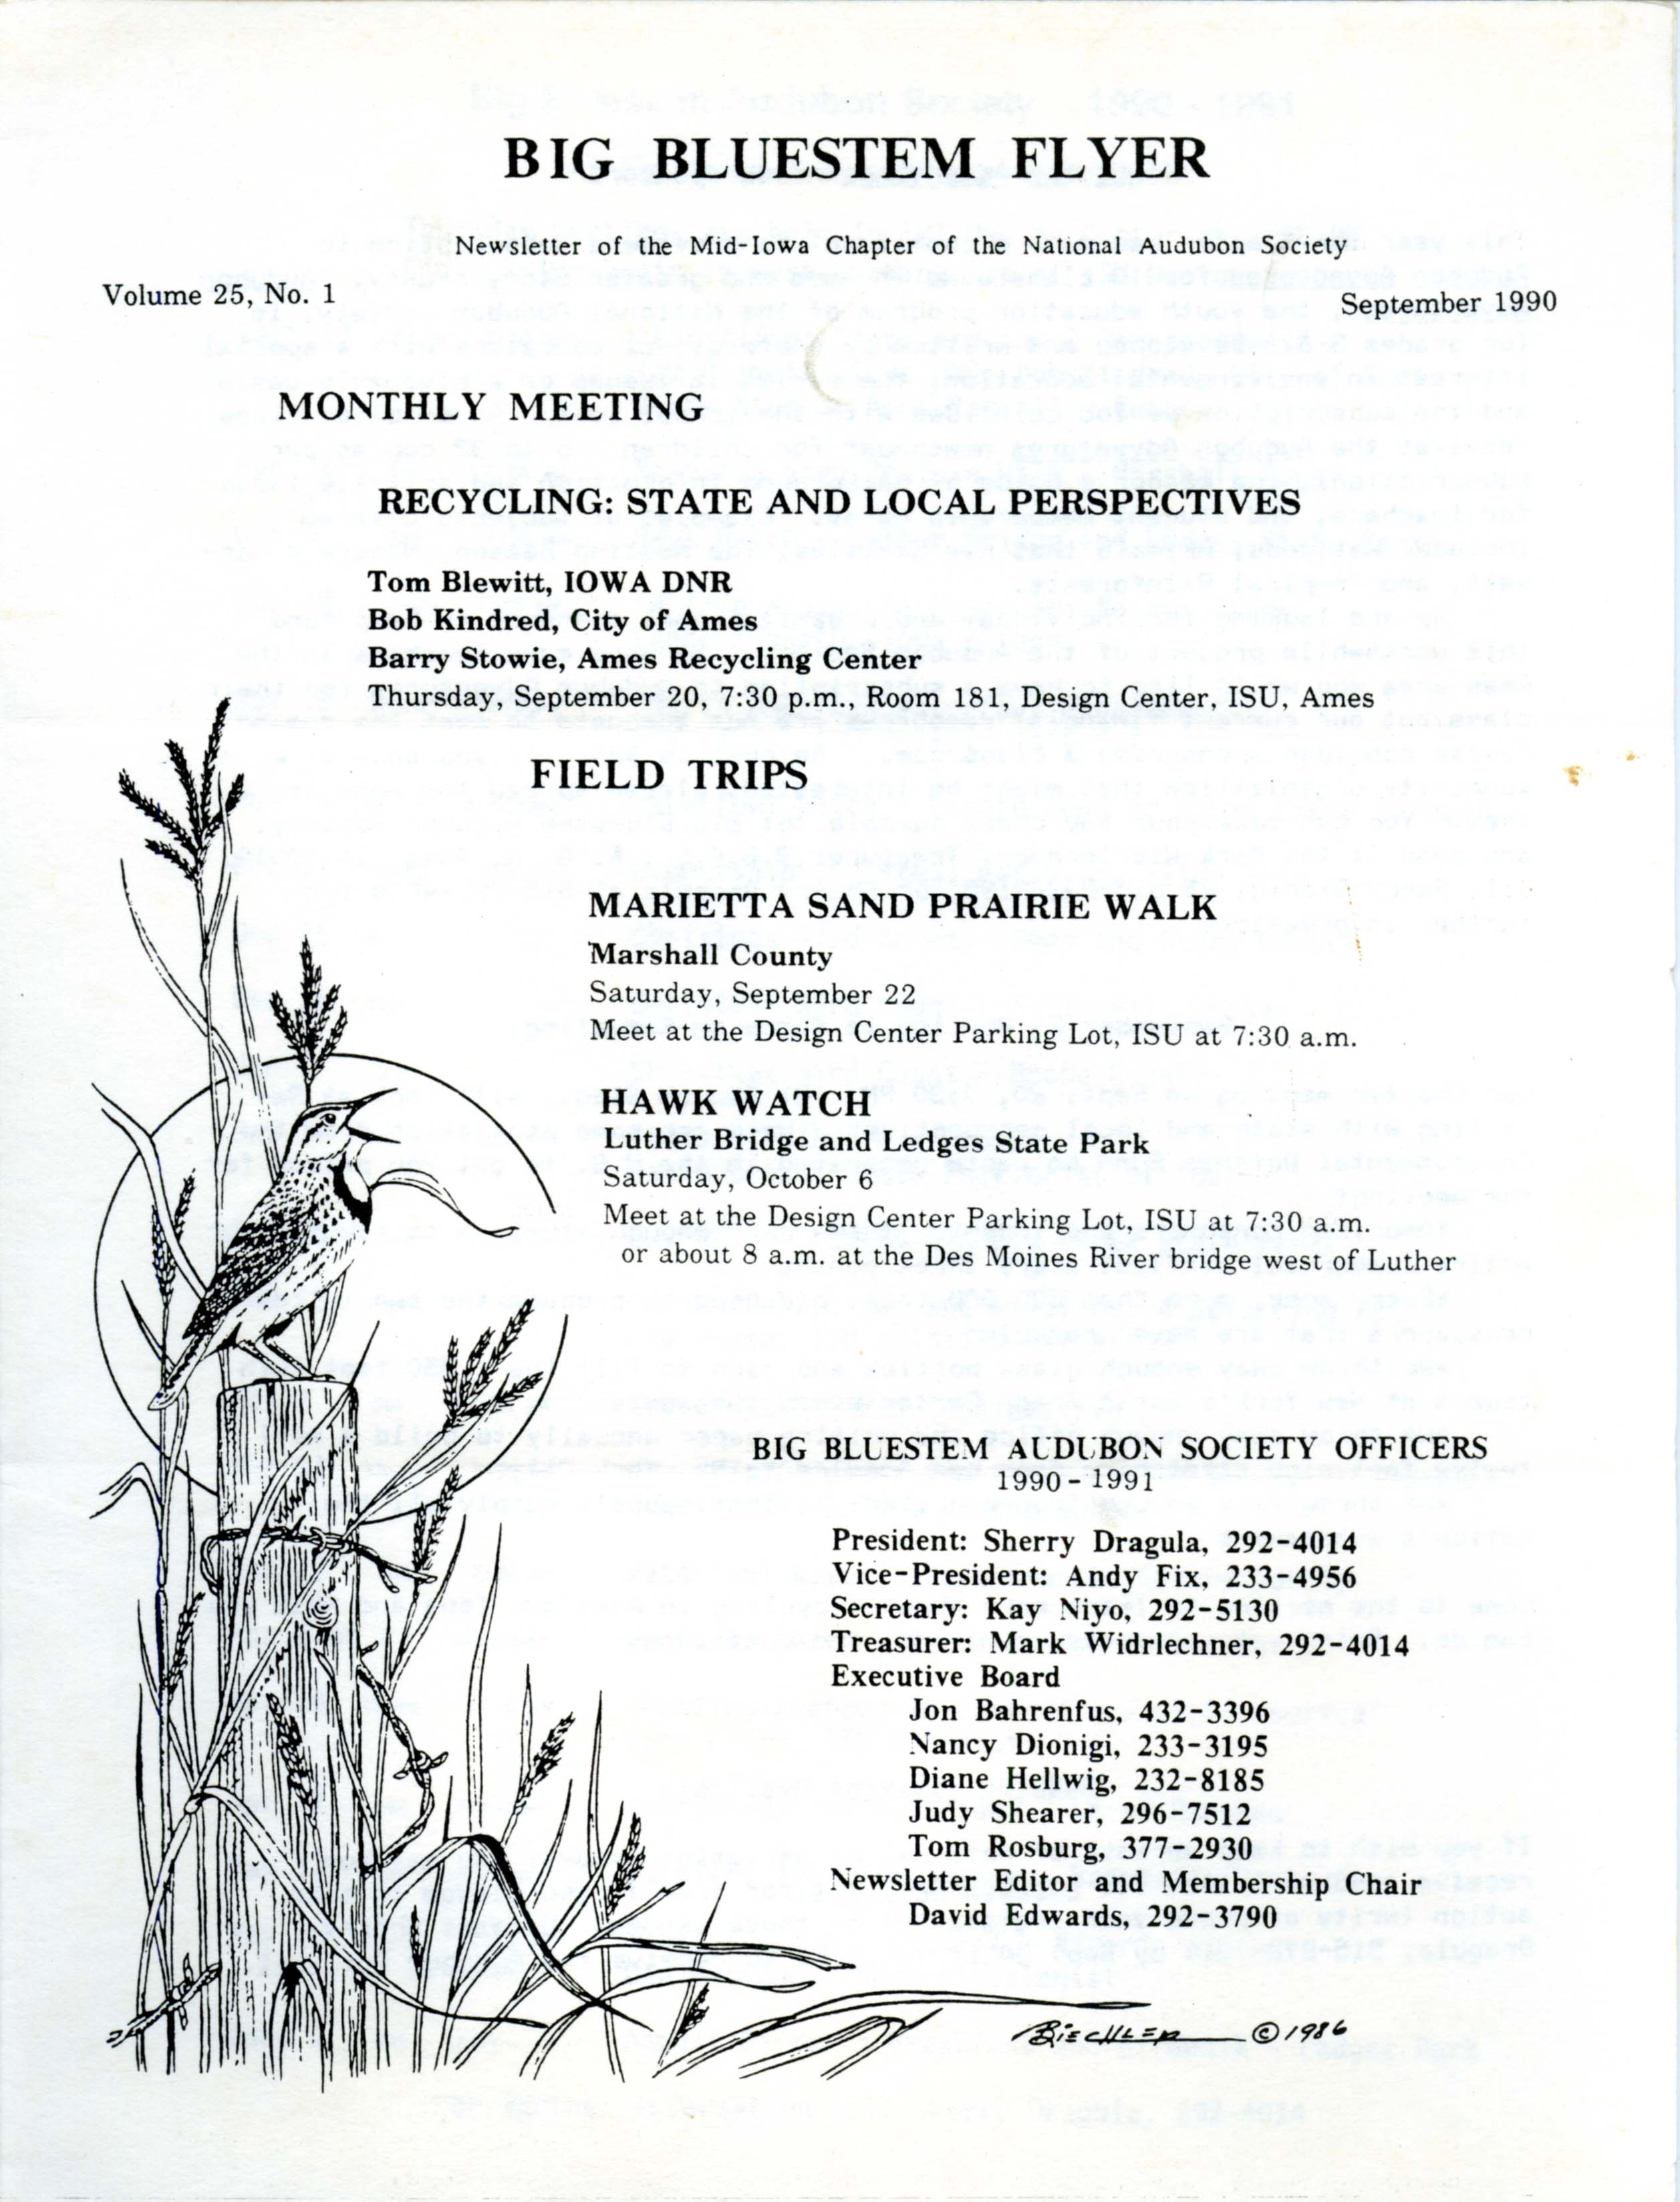 Big Bluestem Flyer, Volume 25, Number 1, September 1990